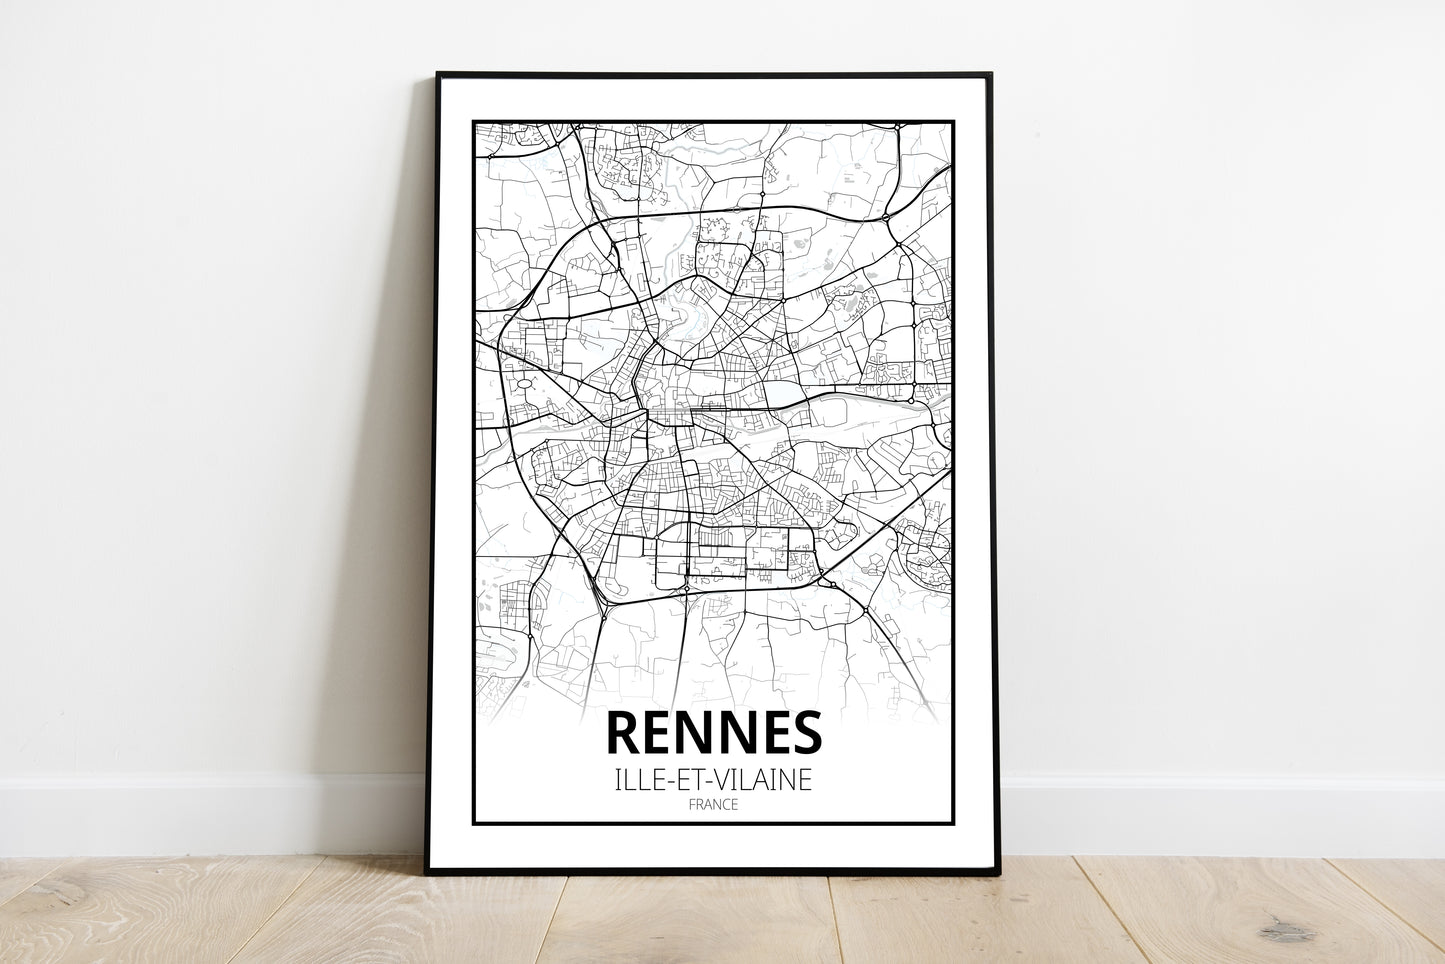 Rennes - Ille et Vilaine